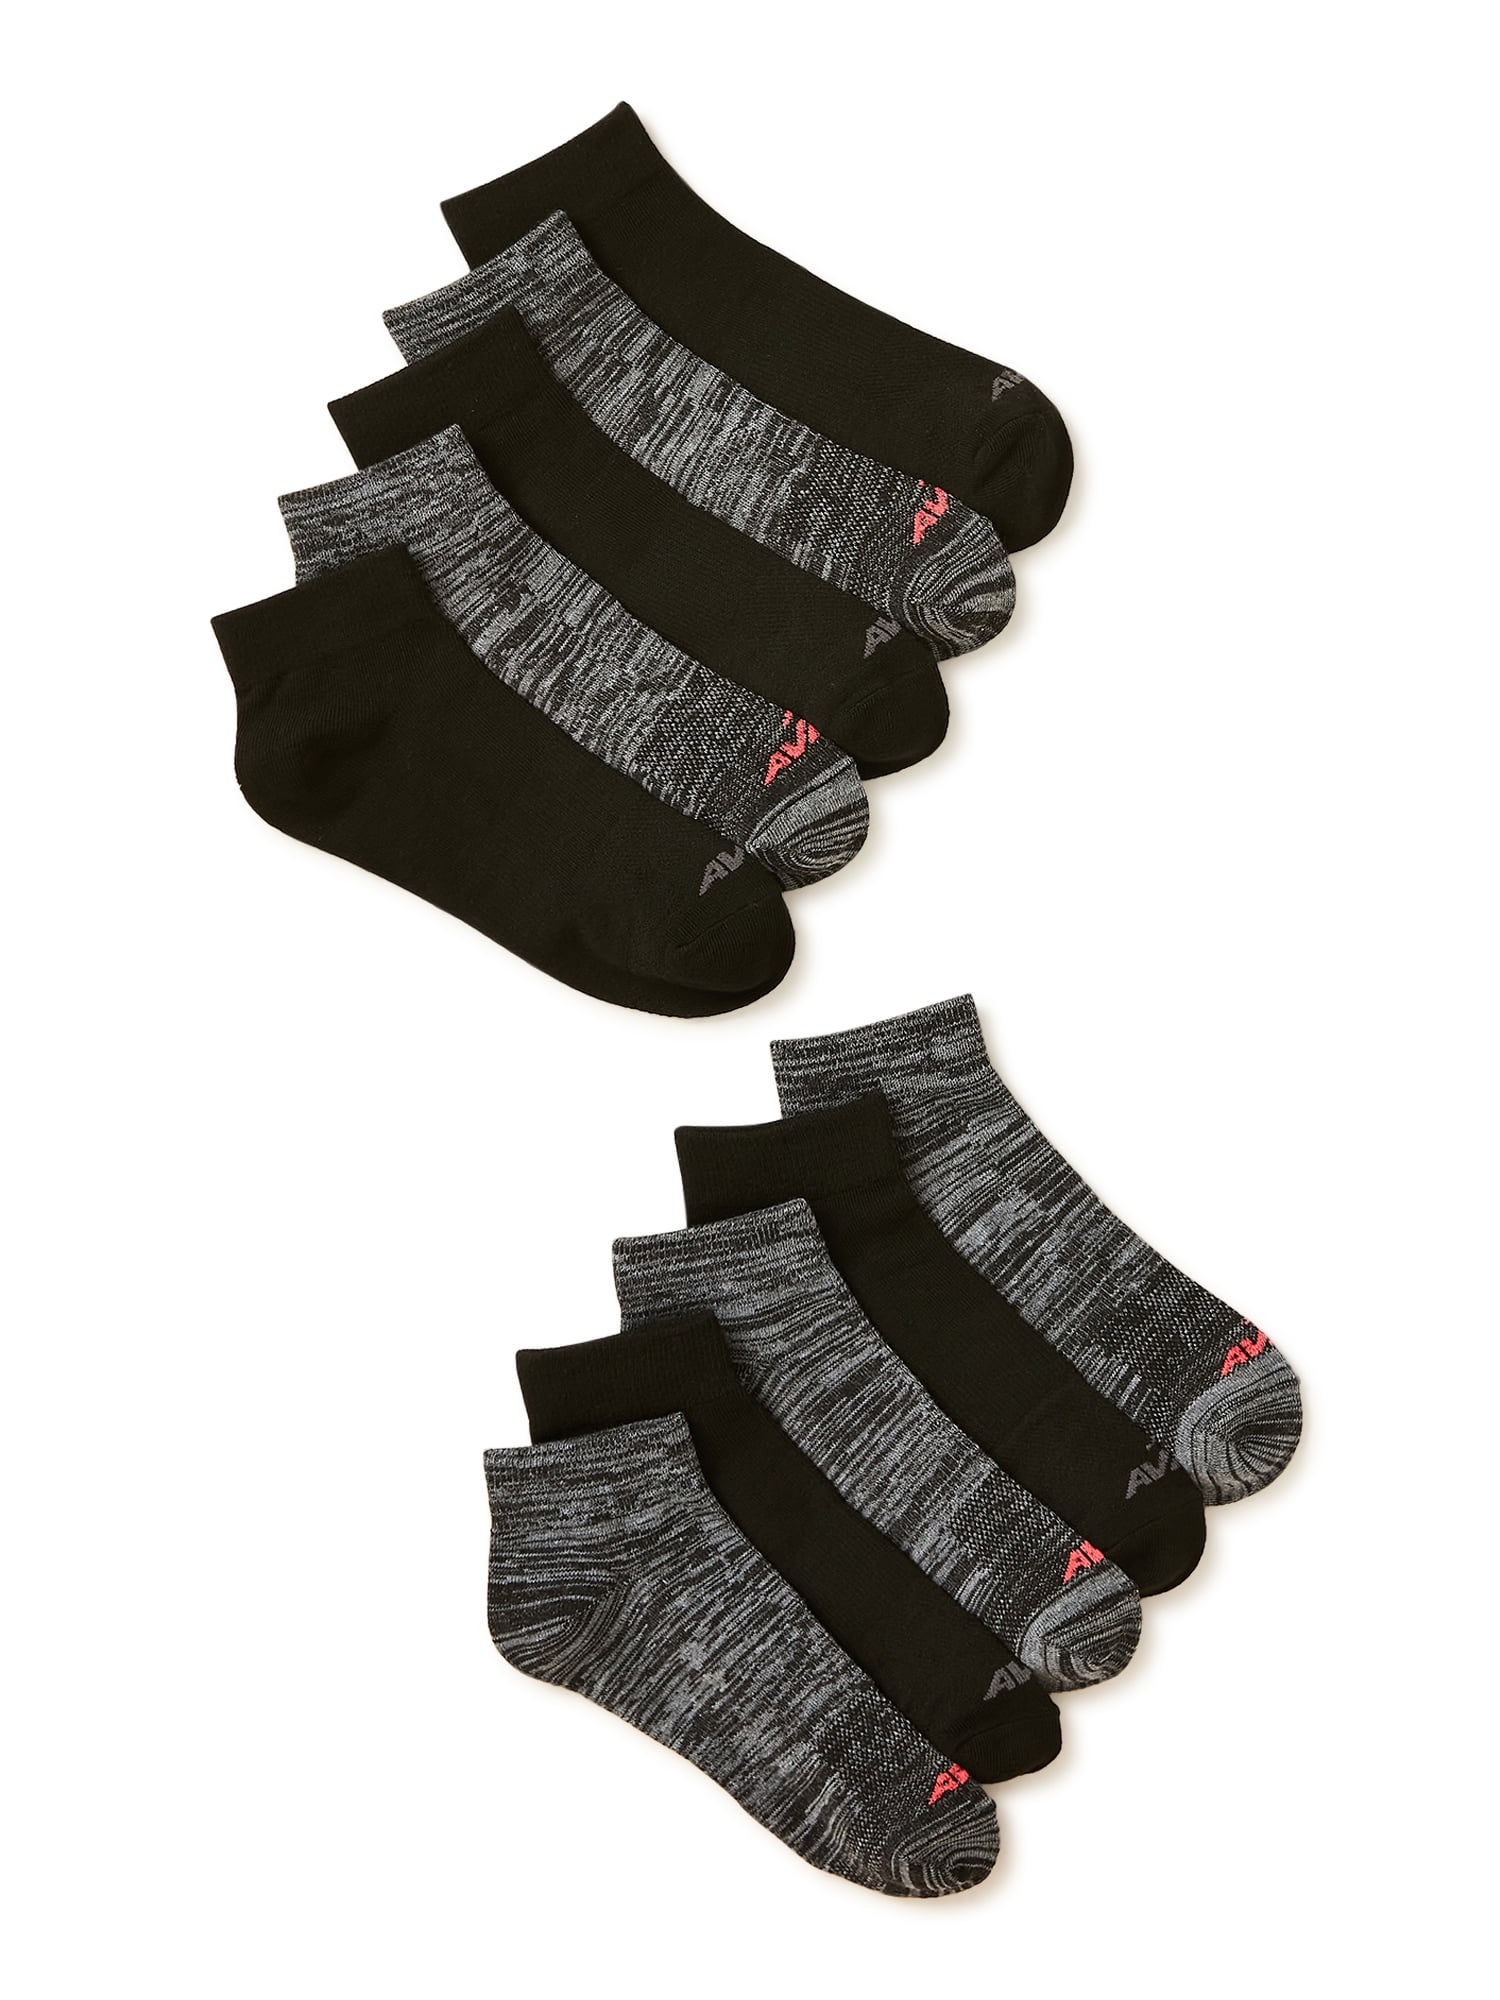 Avia Women's Performance Lightweight Ankle Socks, 10-Pack